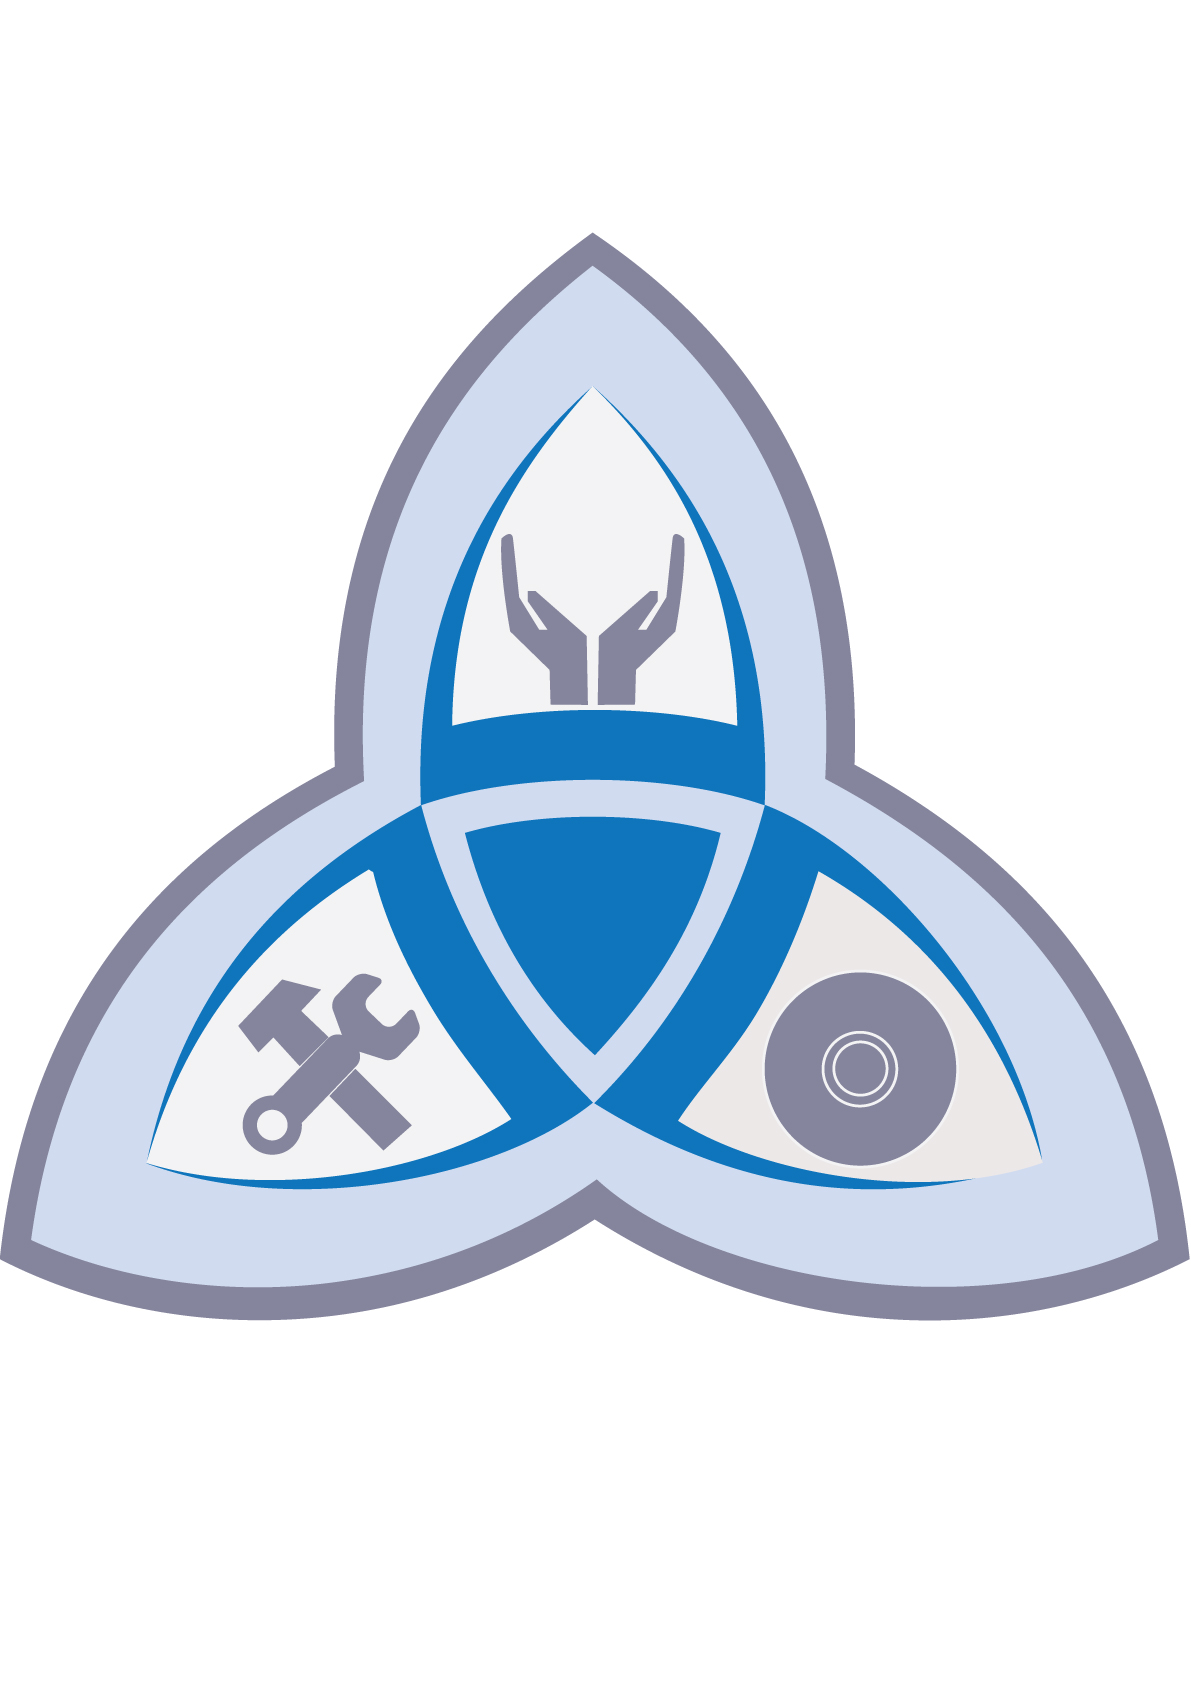 Dc Trinity Logo